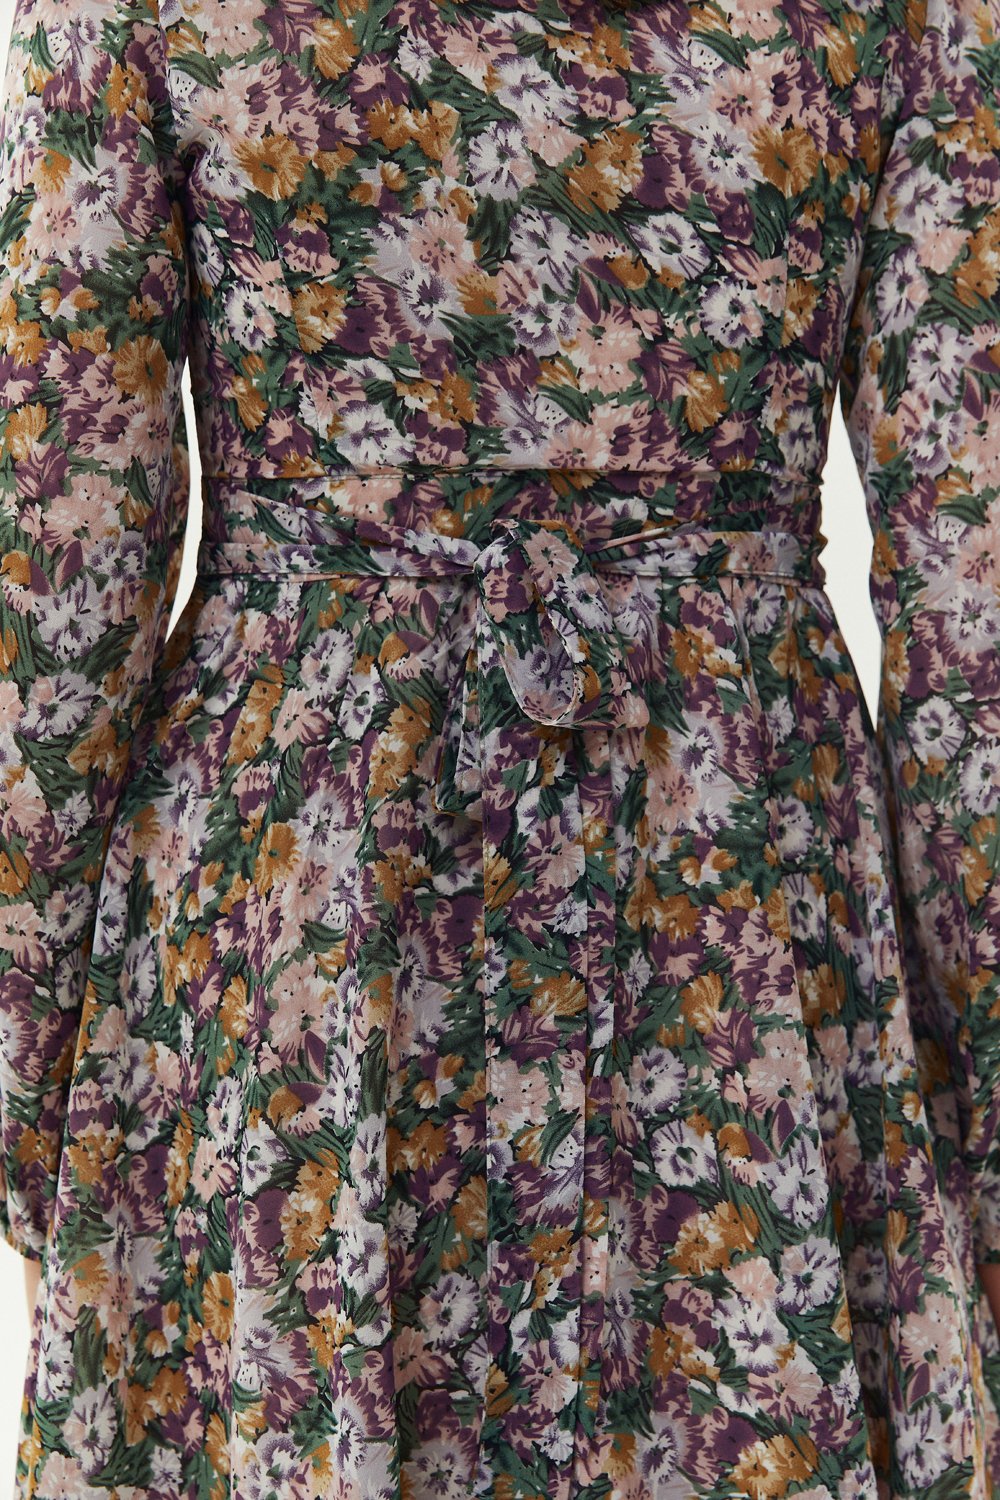 Lilac chiffon lined wrap dress